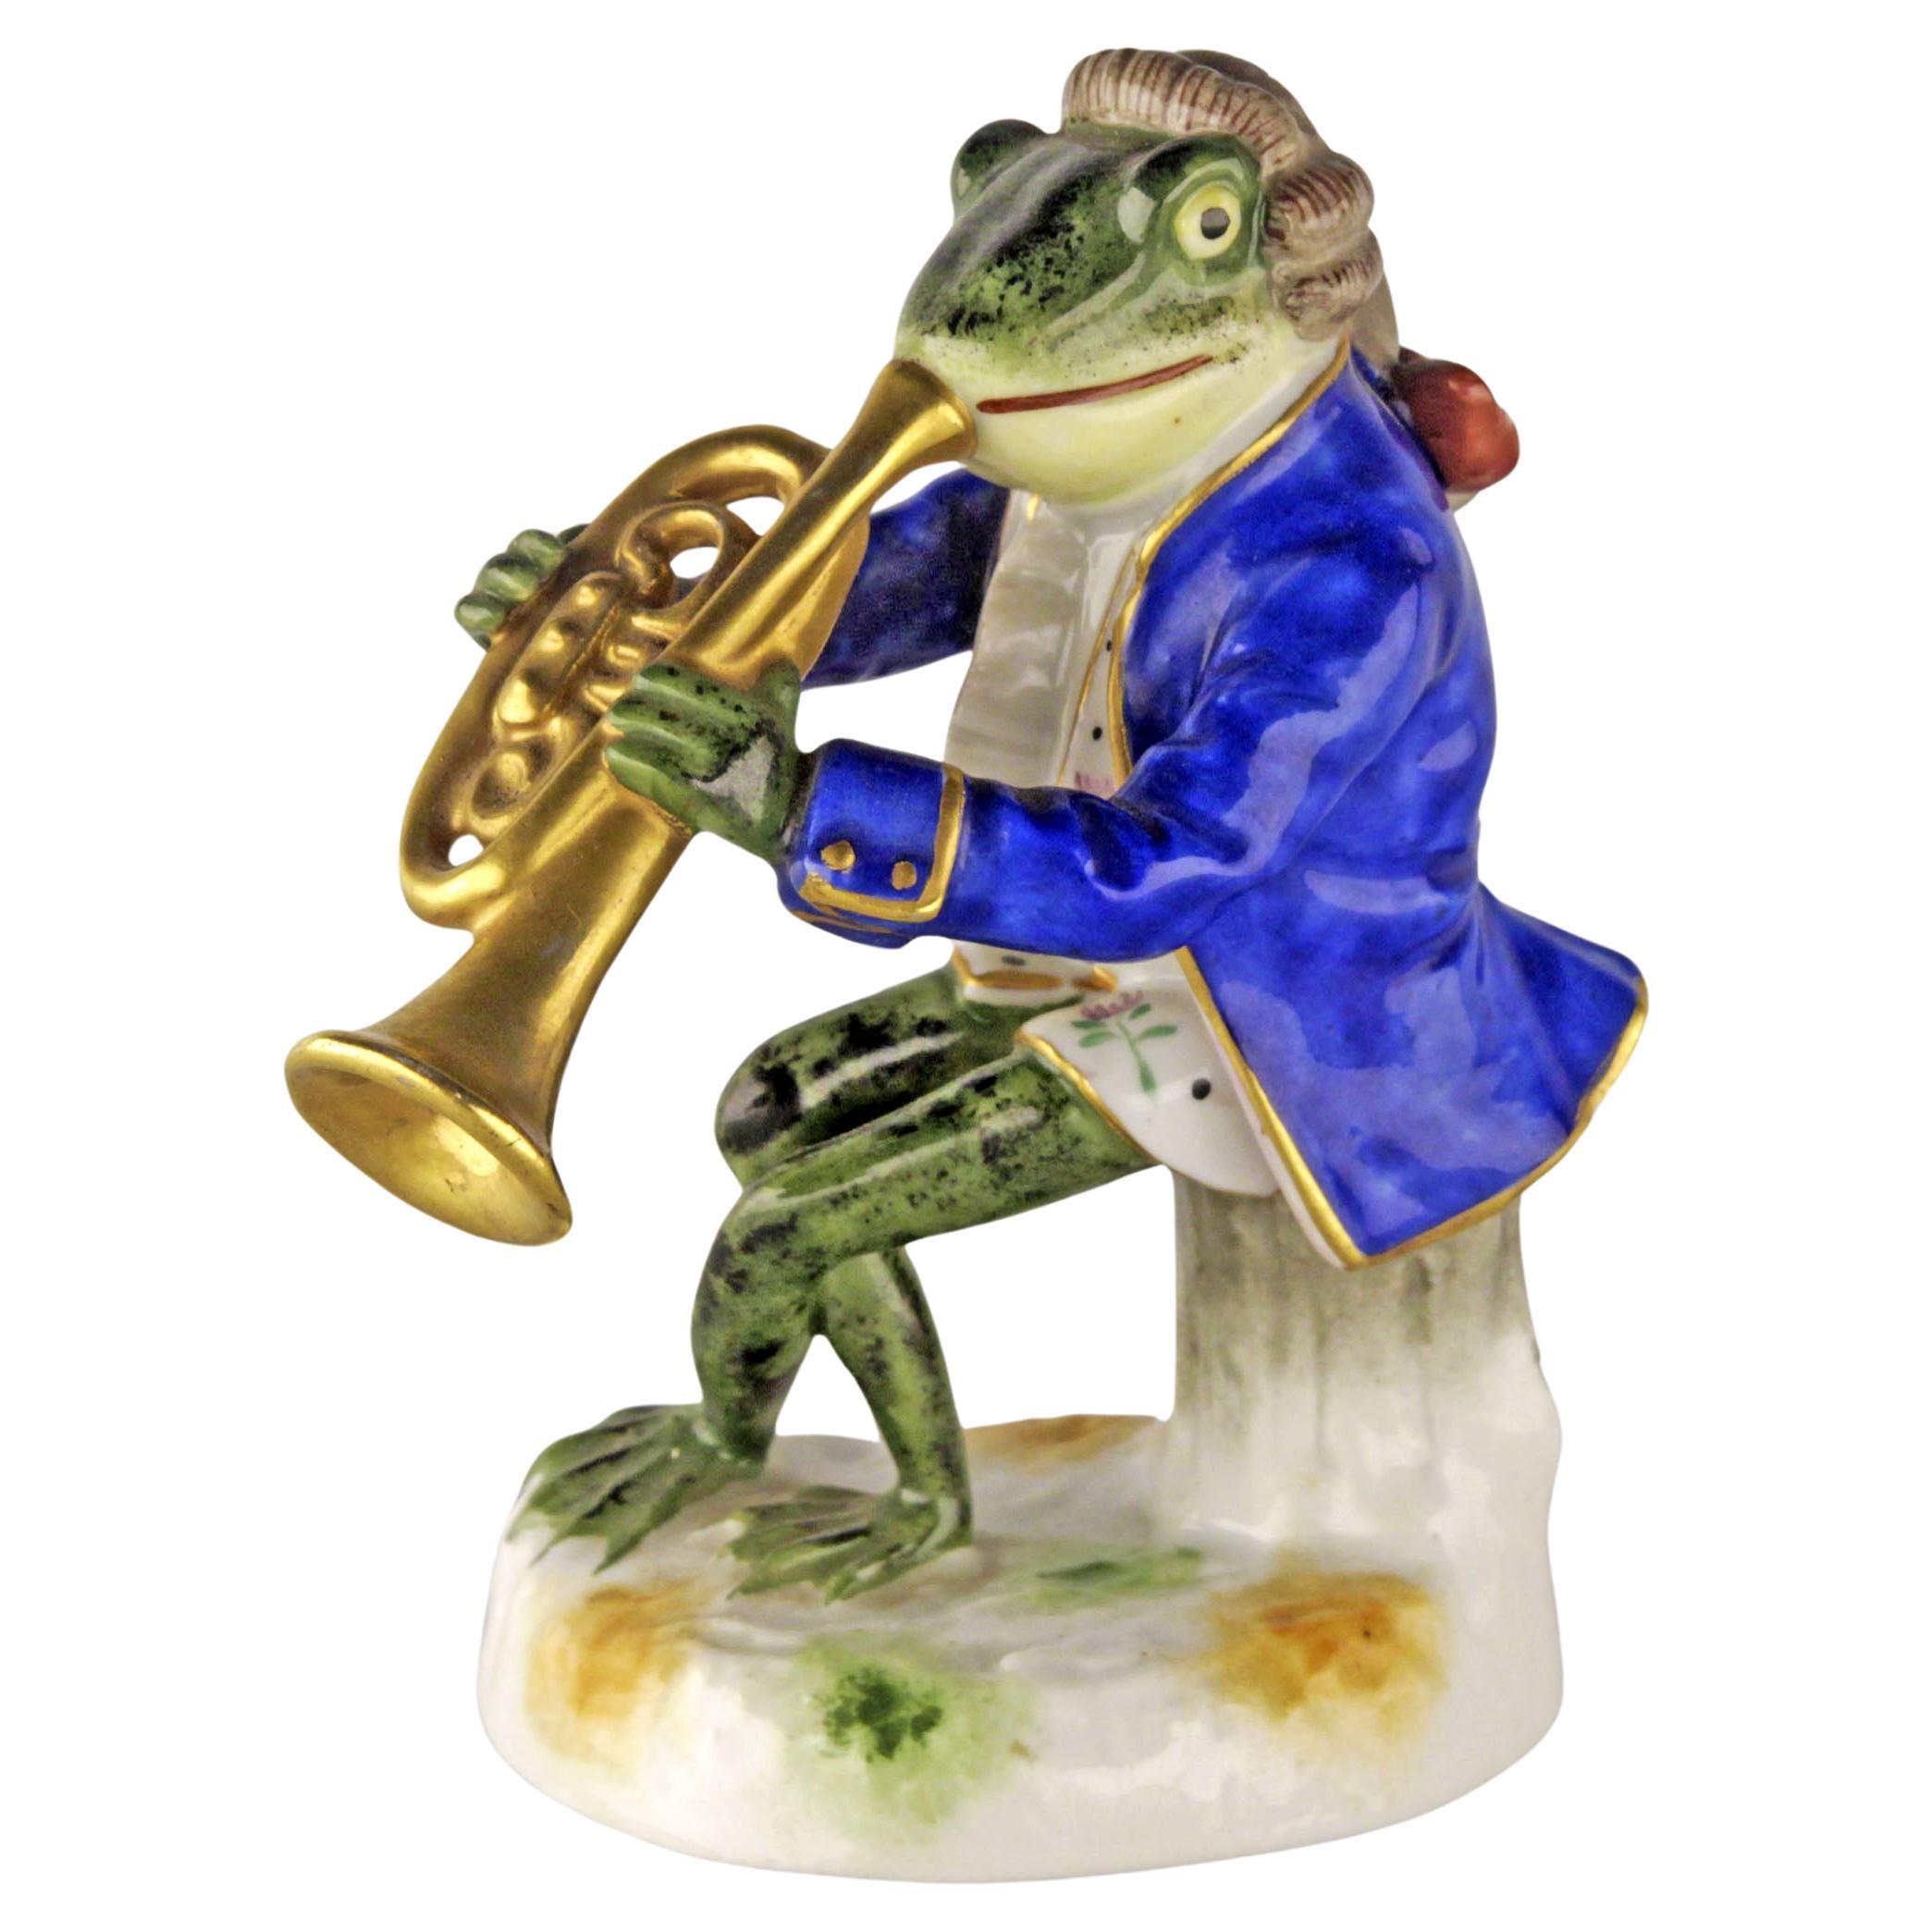 Jugendstil German Porcelain Figurine of a Brass Playing Frog by Goebel Company